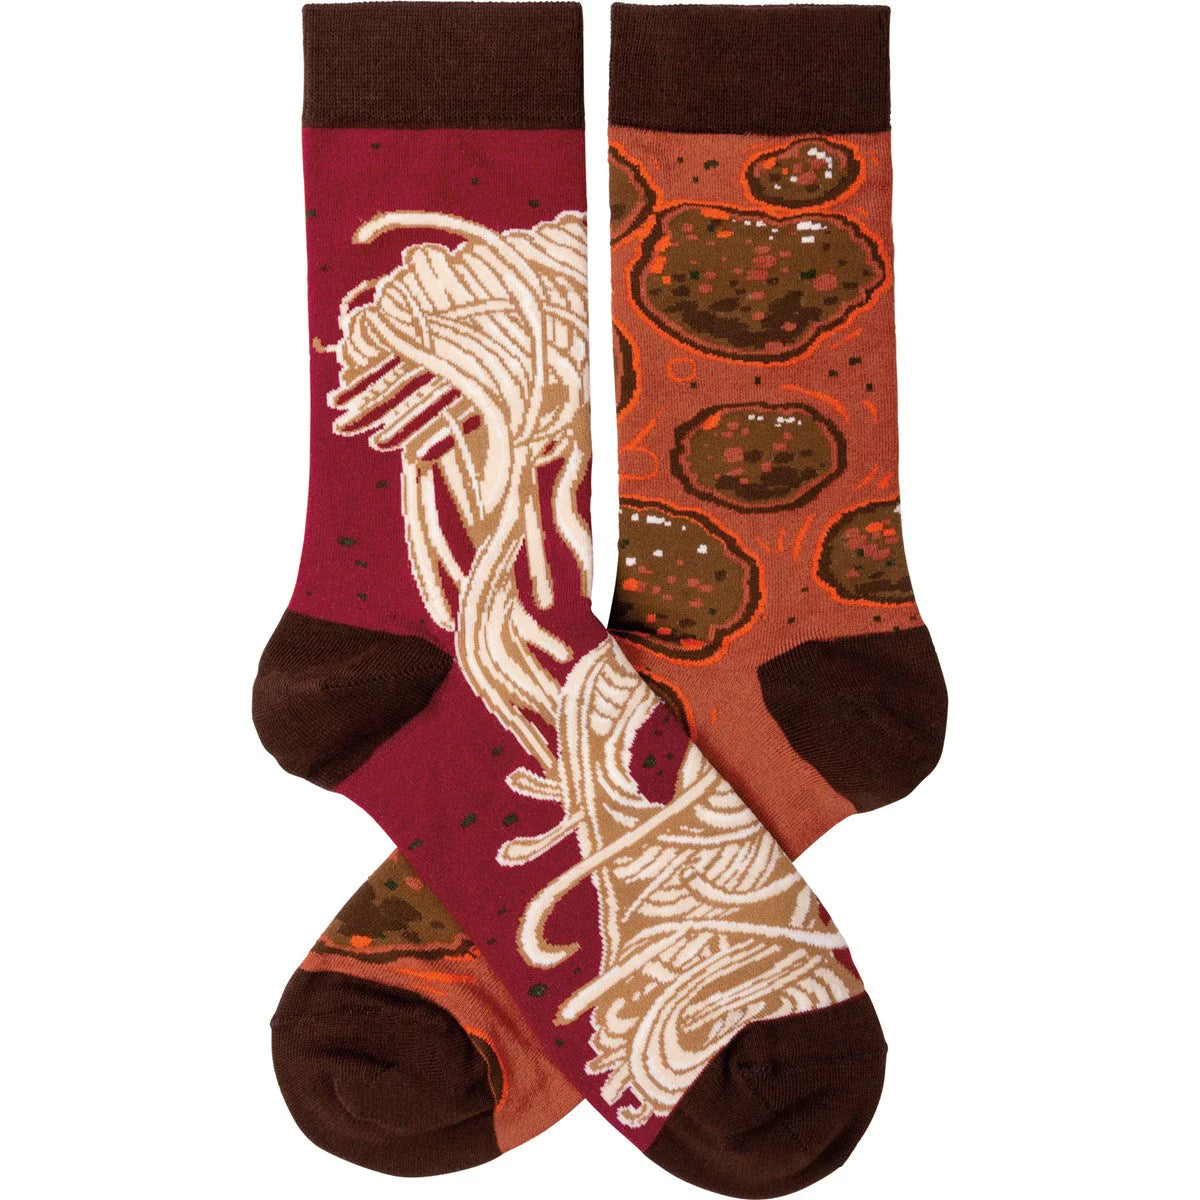 Socks - Spaghetti & Meatballs